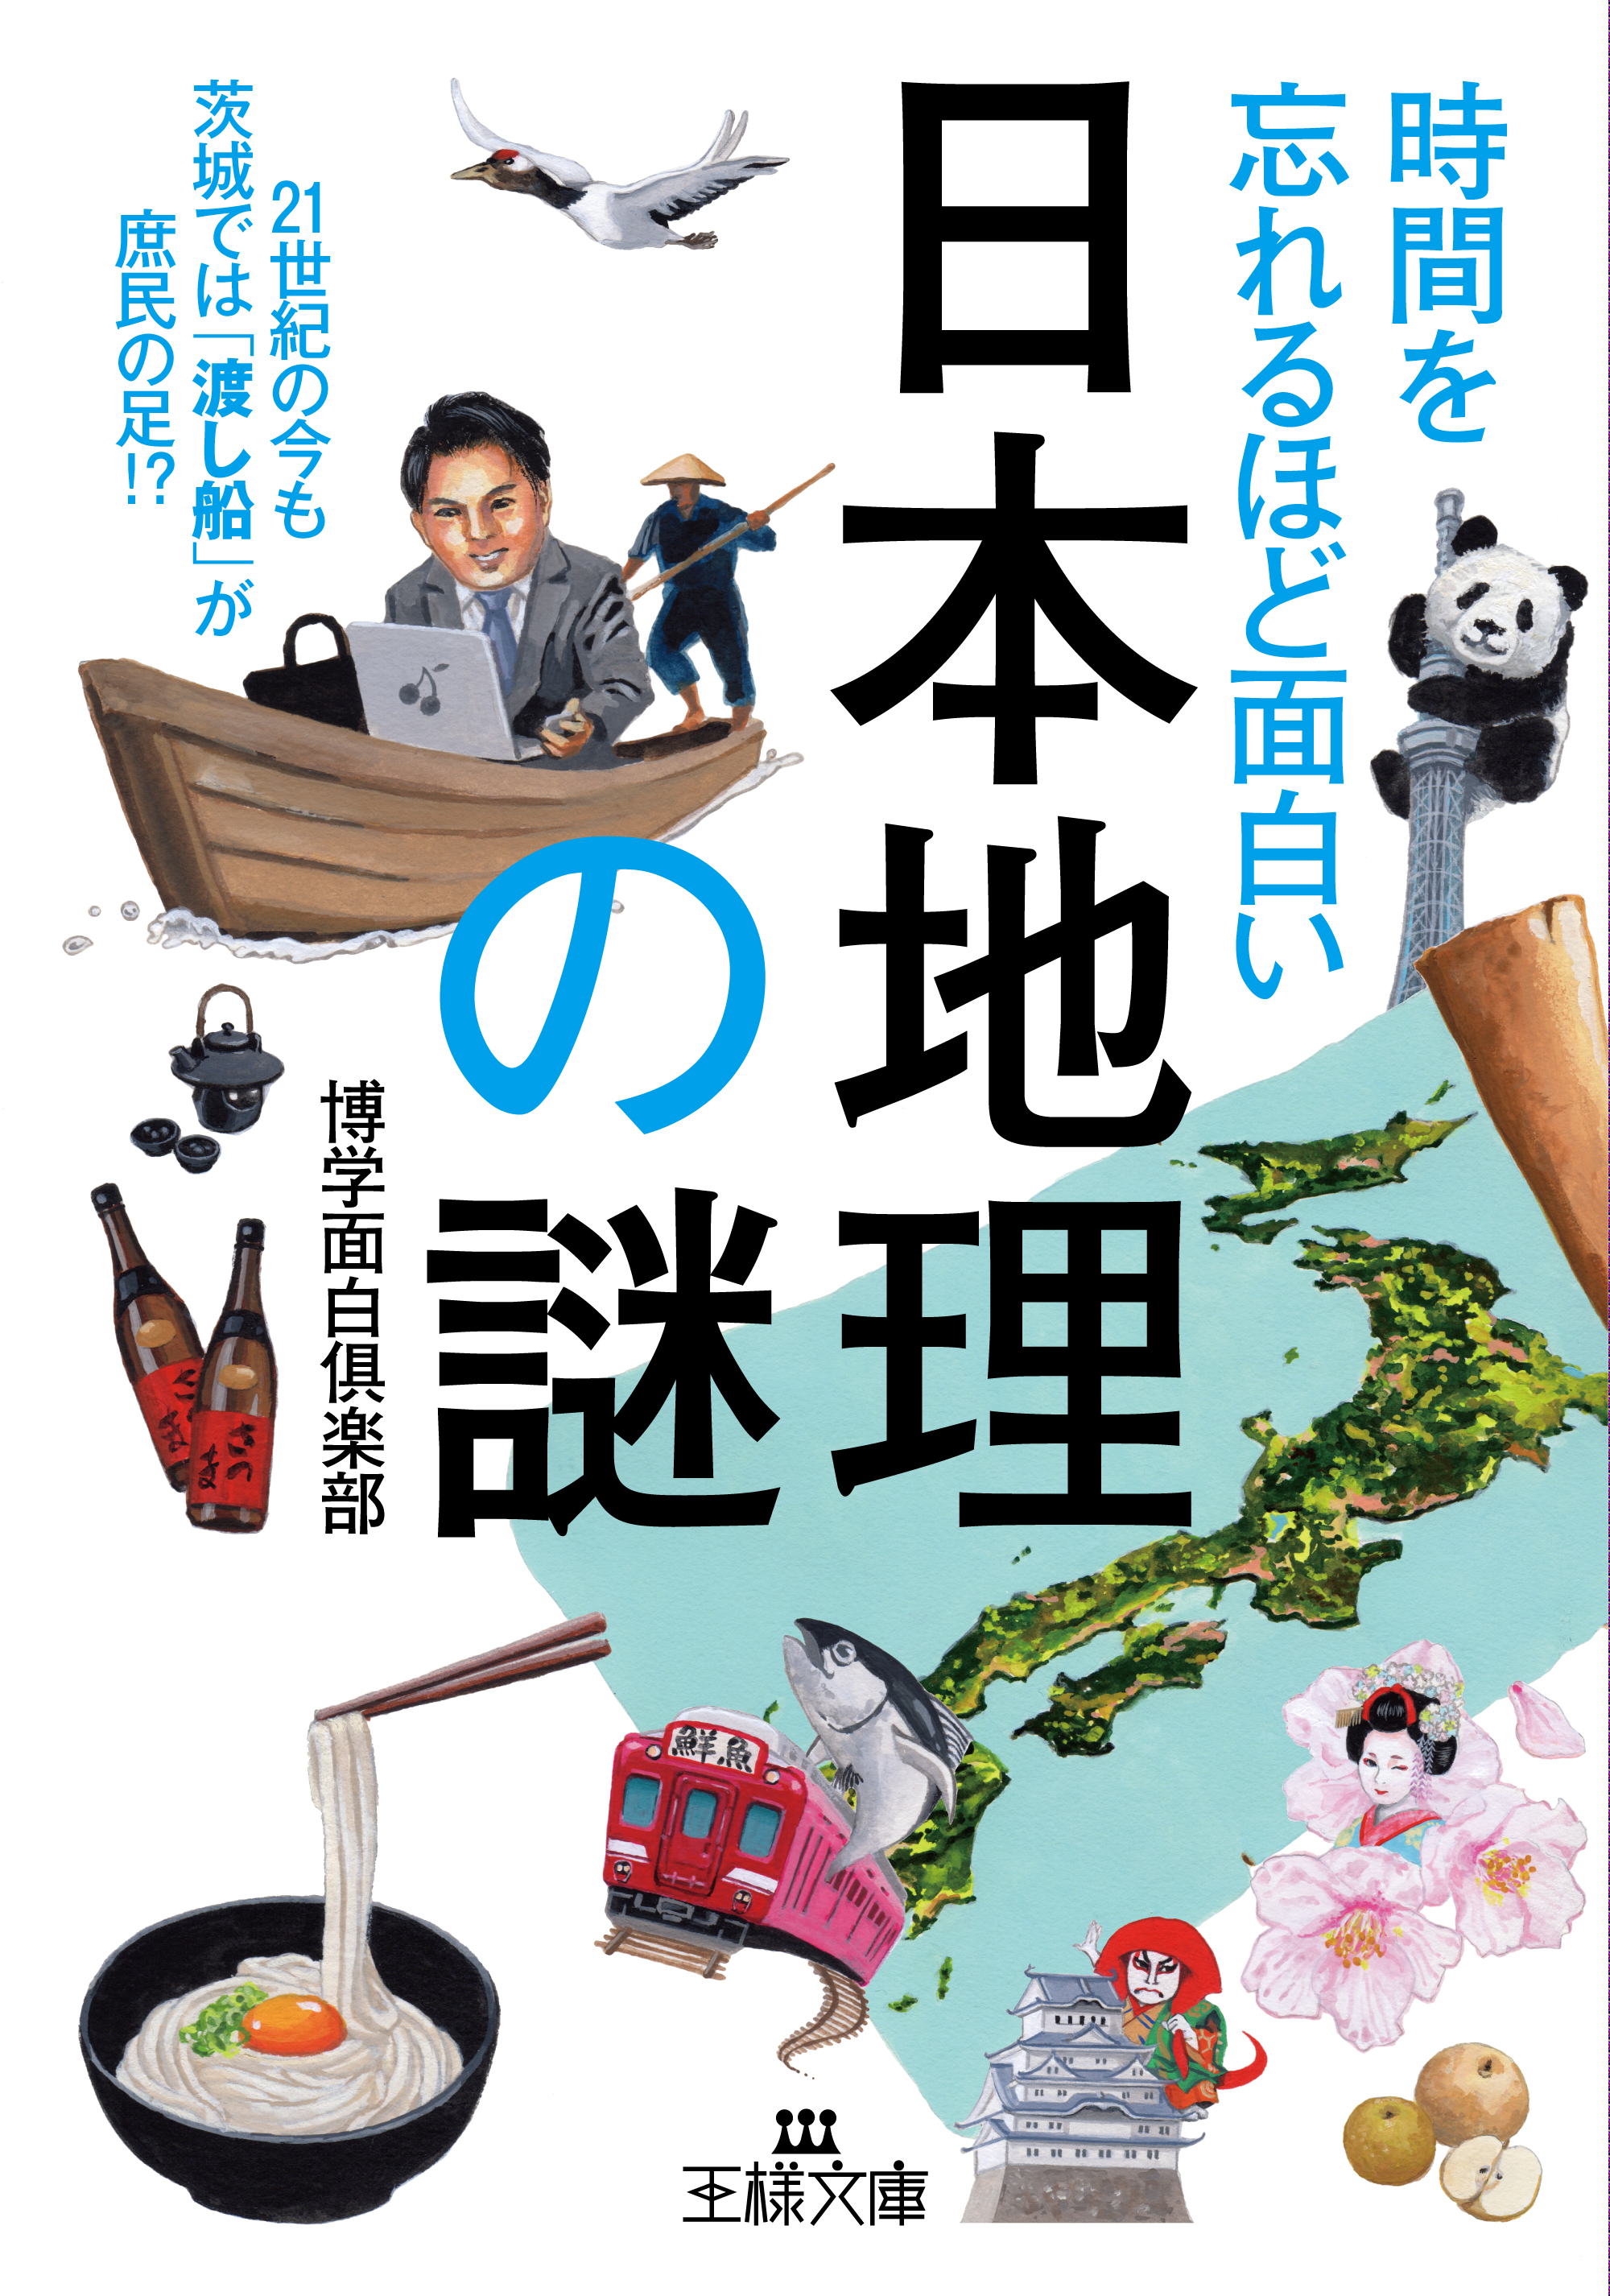 時間を忘れるほど面白い「日本地理」の謎の商品画像